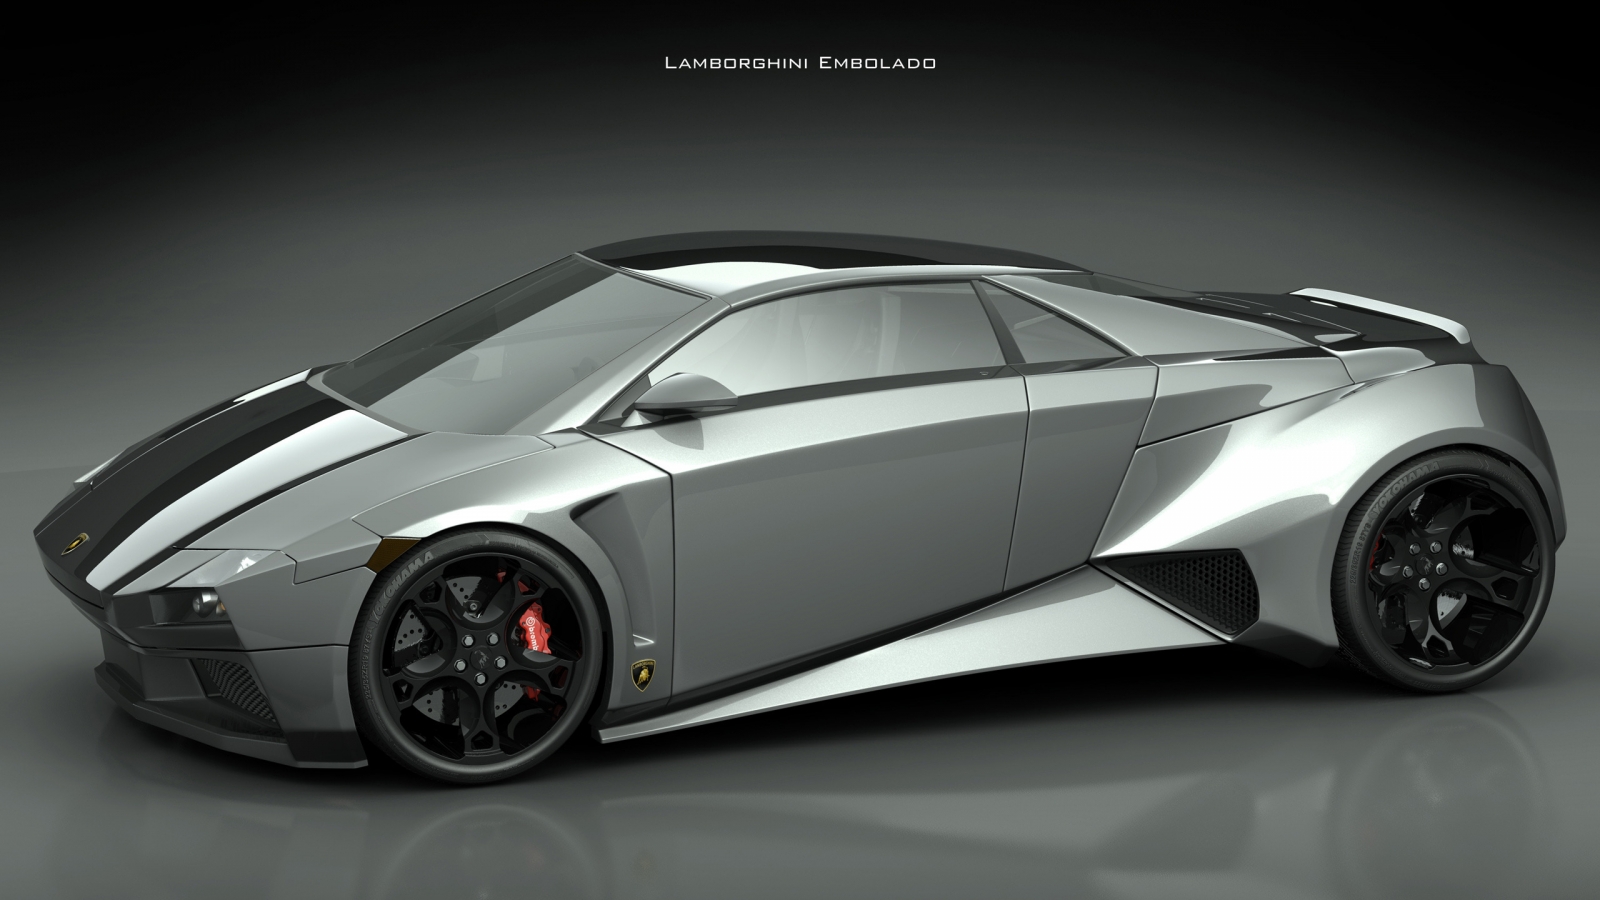 Lamborghini Embolado for 1600 x 900 HDTV resolution